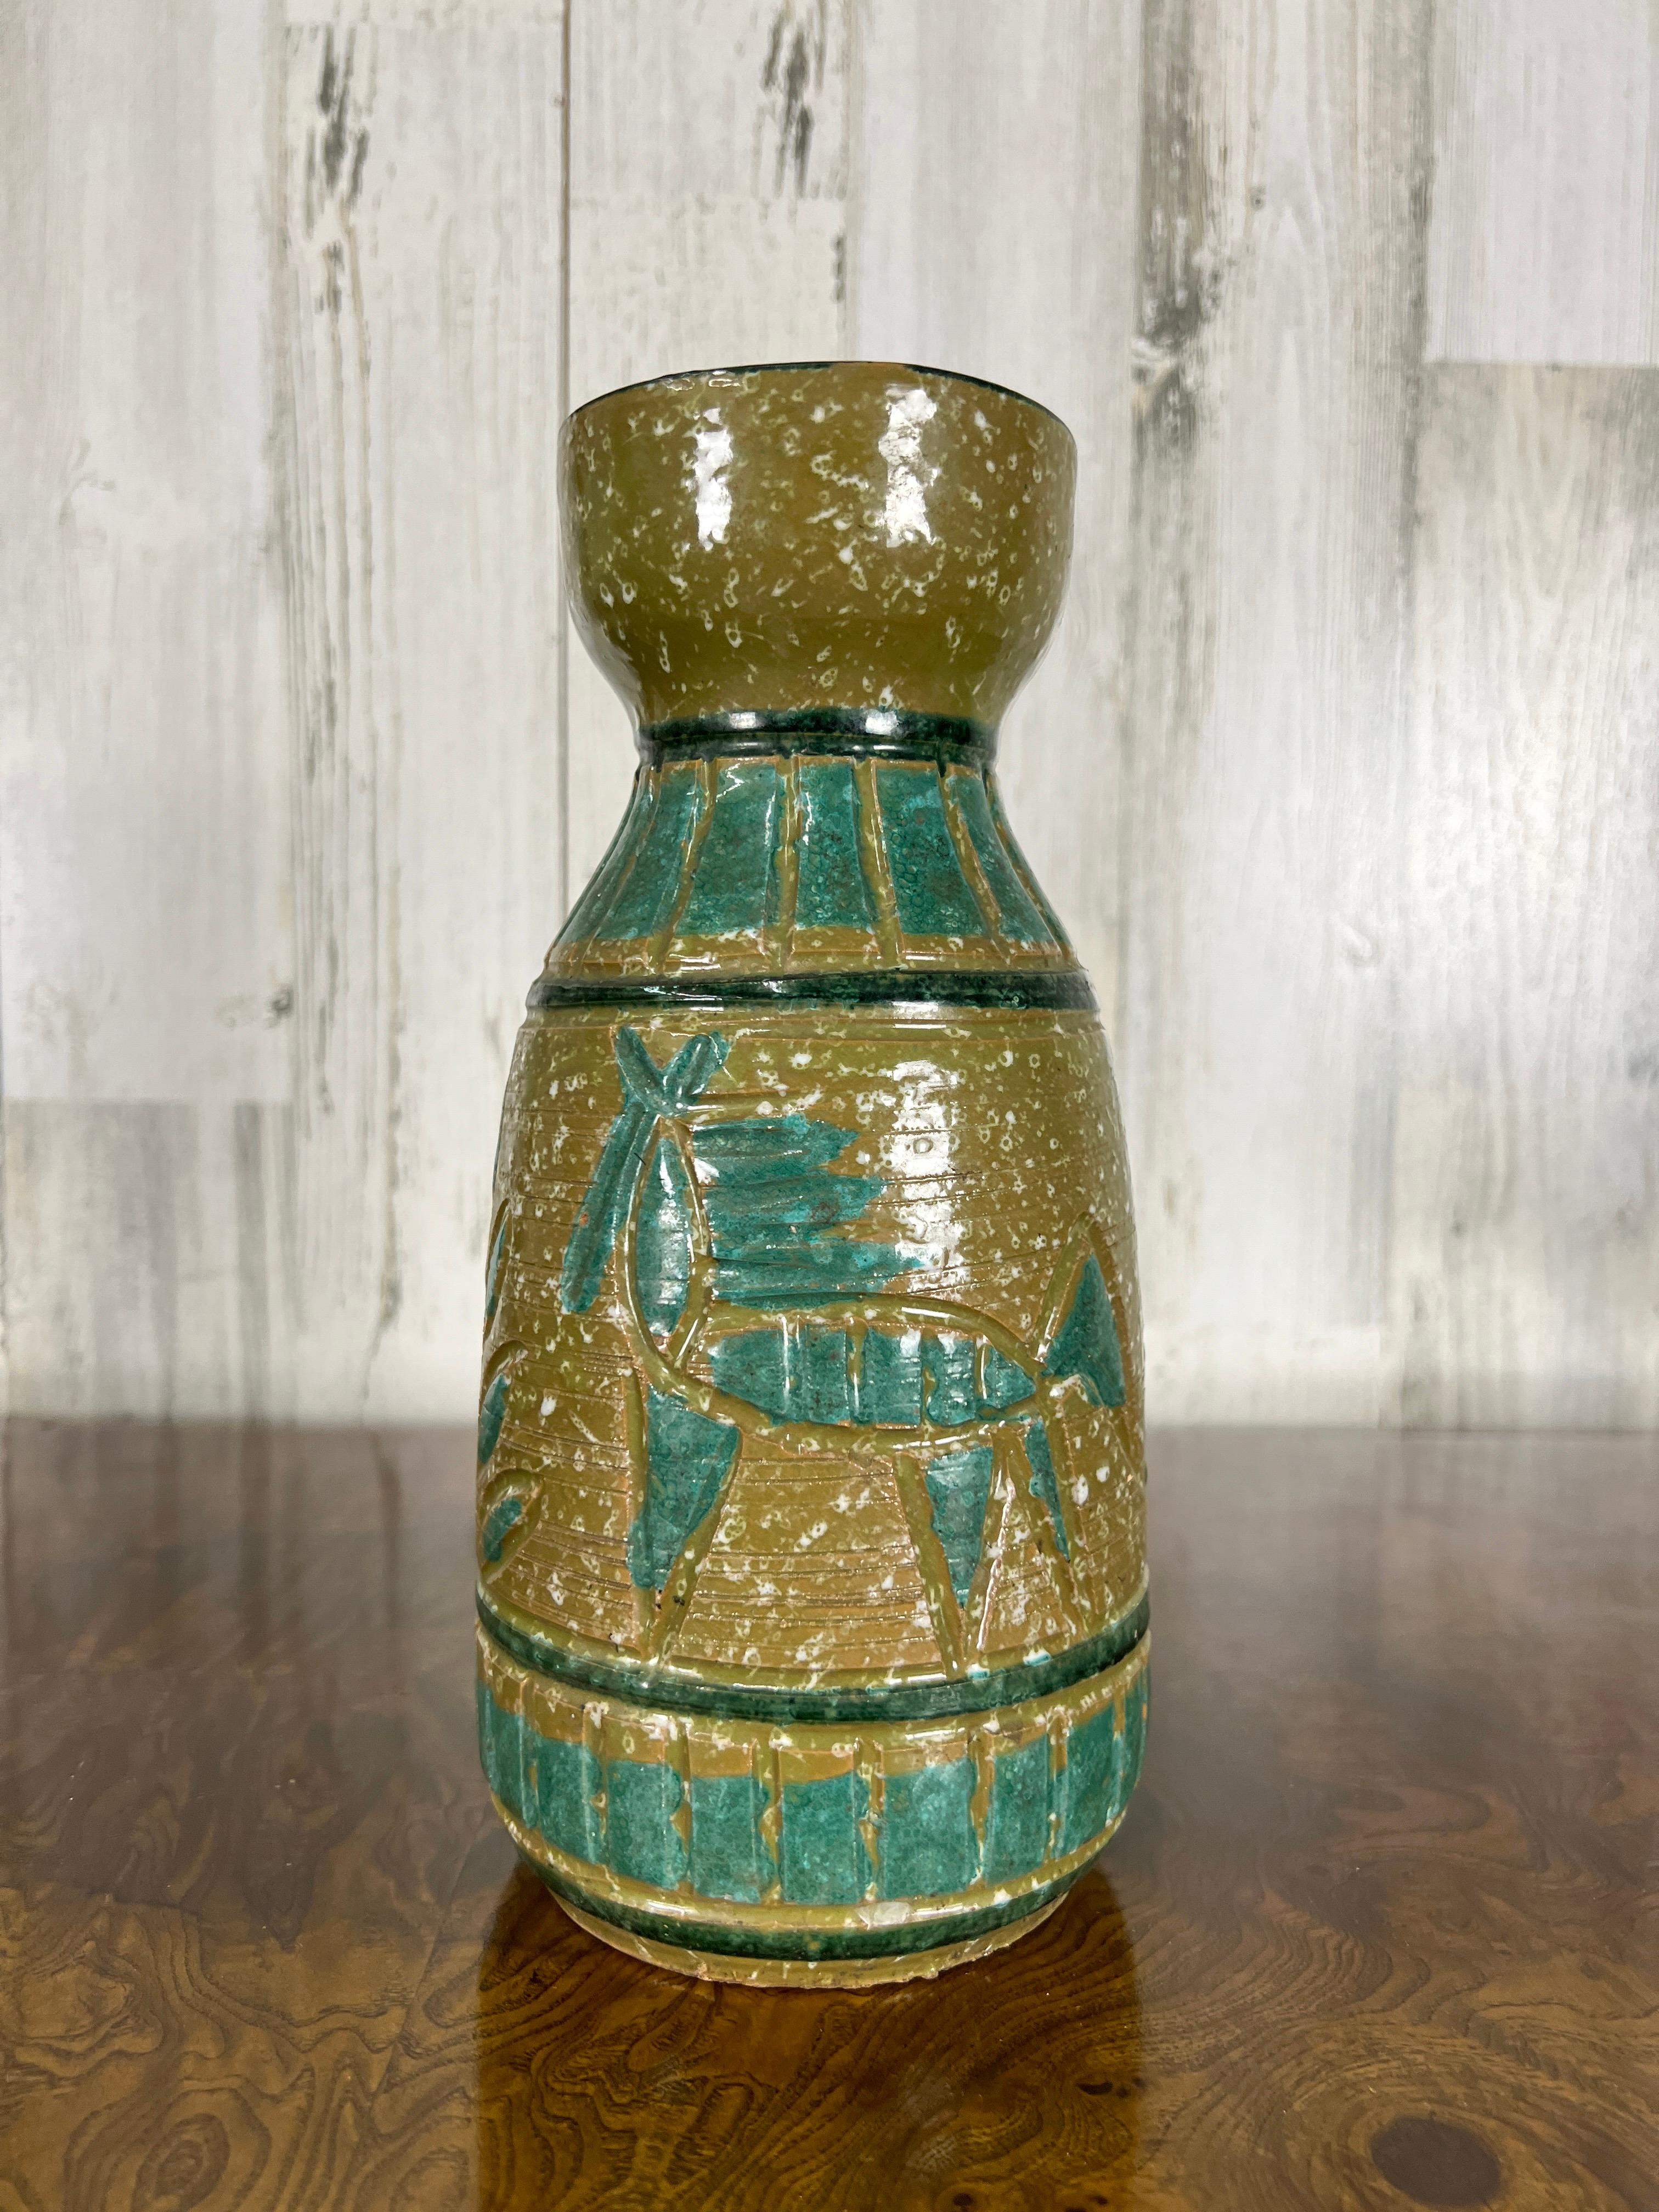 Avocado und Fichte farbige Glasur umgeben diese Vase mit Pferd und Baum Design. 
Hergestellt in Italien.